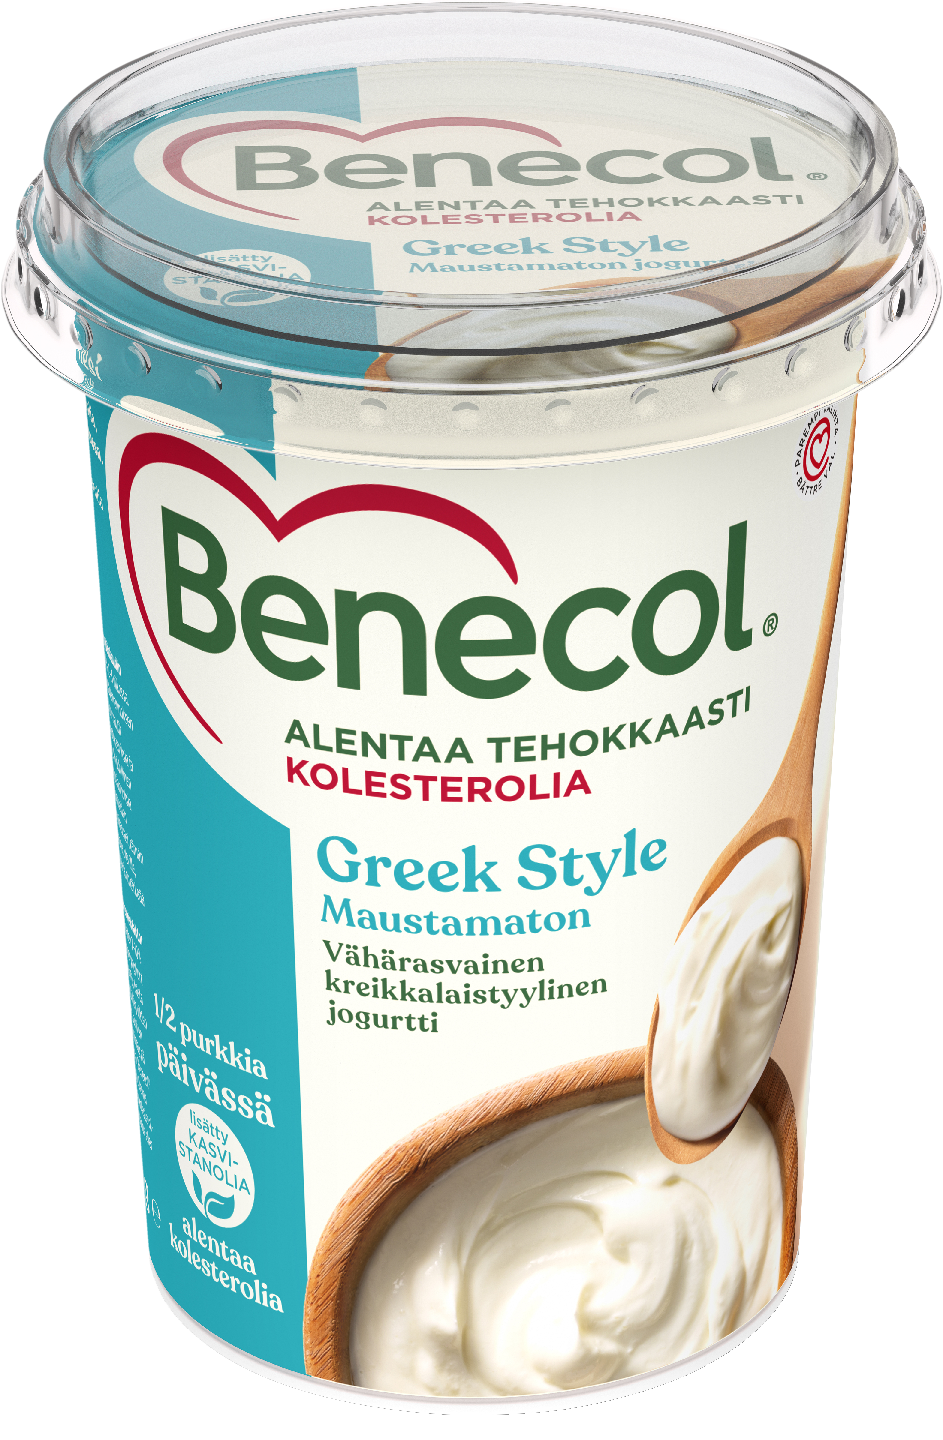 Benecol maustamaton kreikkalaistyylinen jogurtti 450g